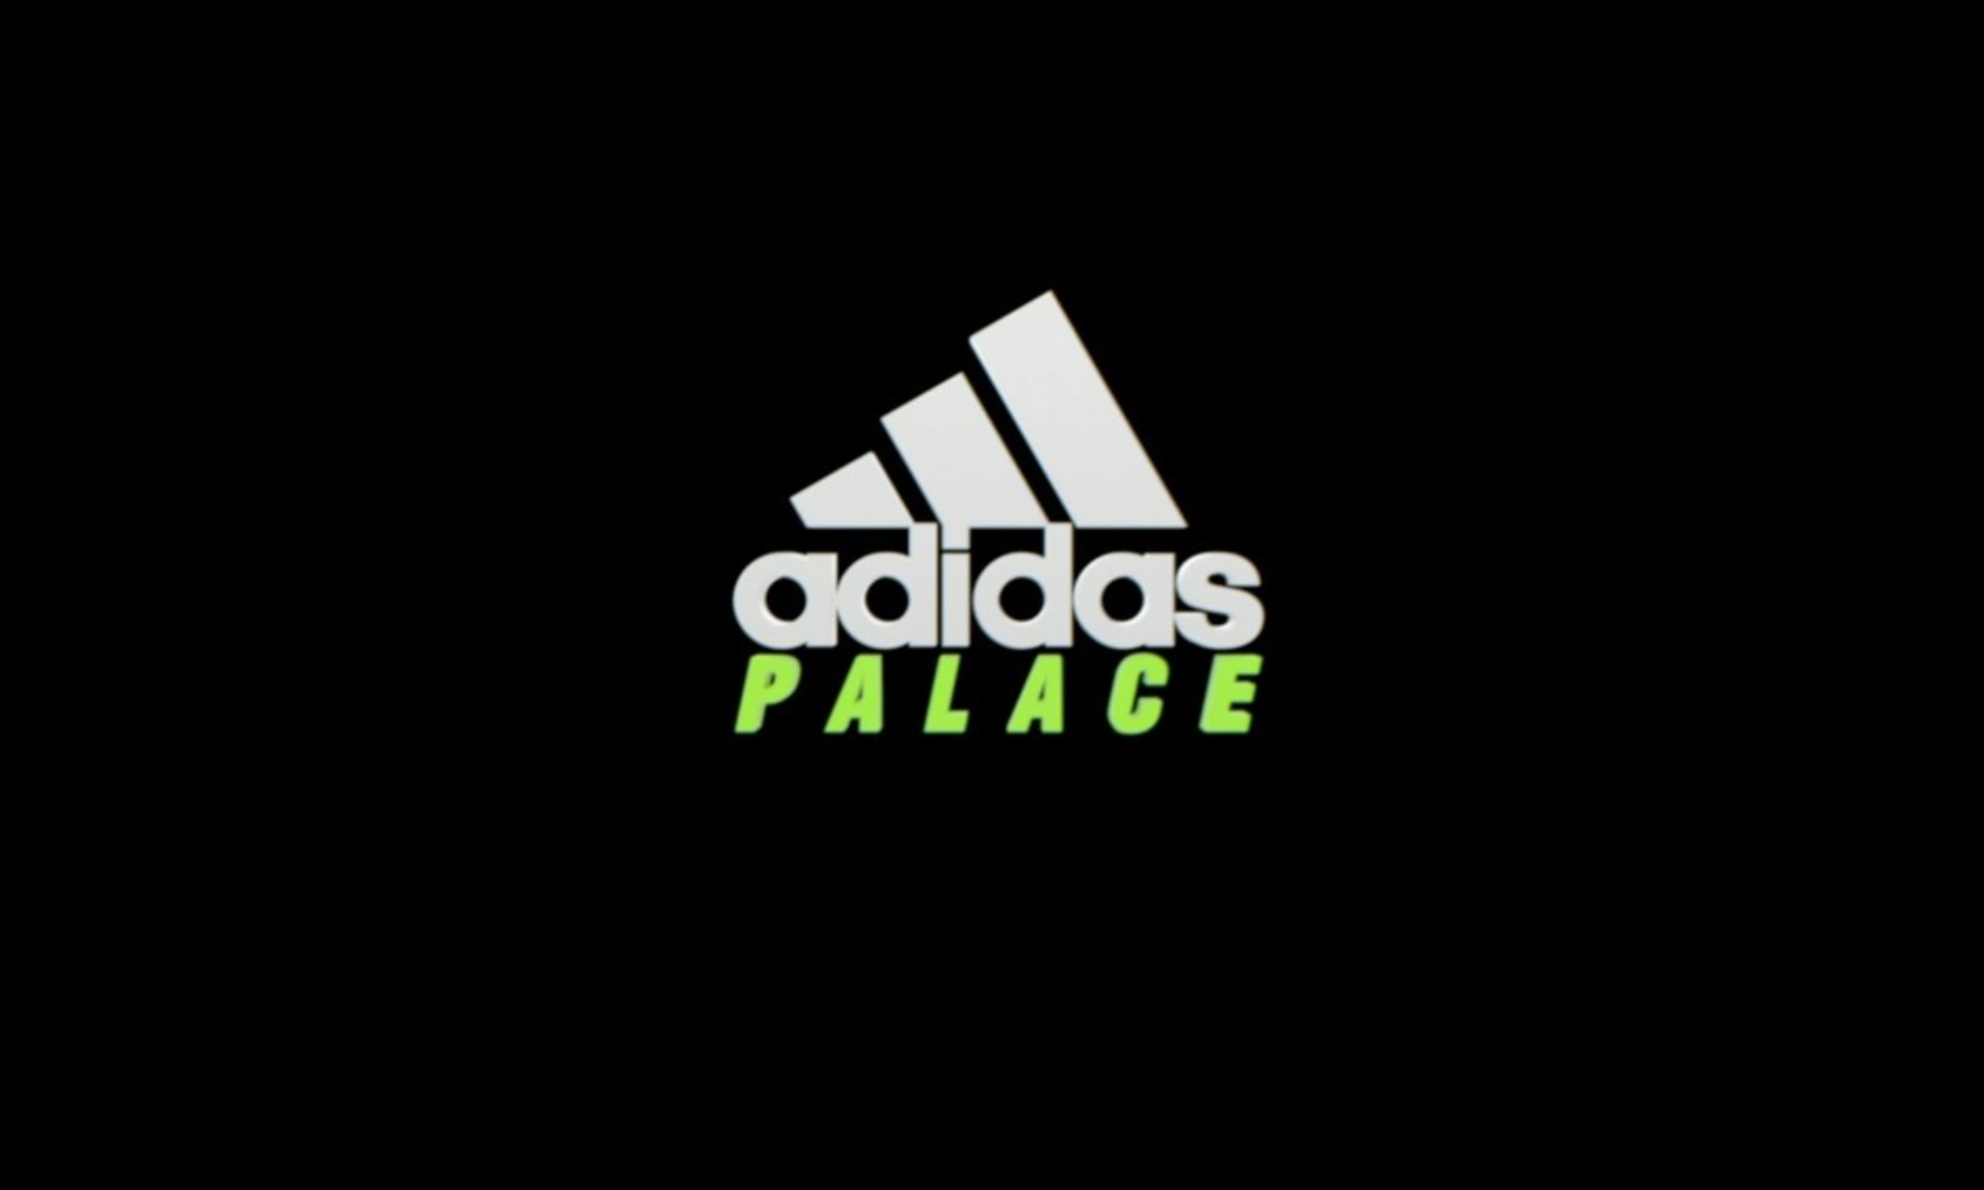 PALACE x adidas 全新企划预告